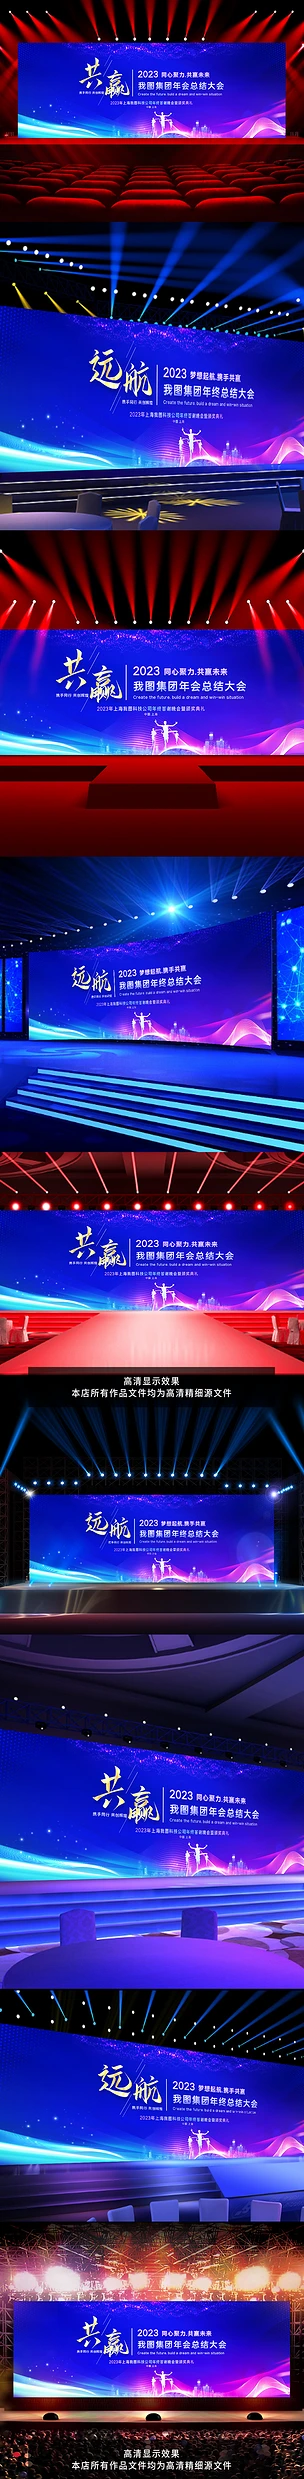 蓝色互联网科技会议发布会企业年会晚会舞台背景